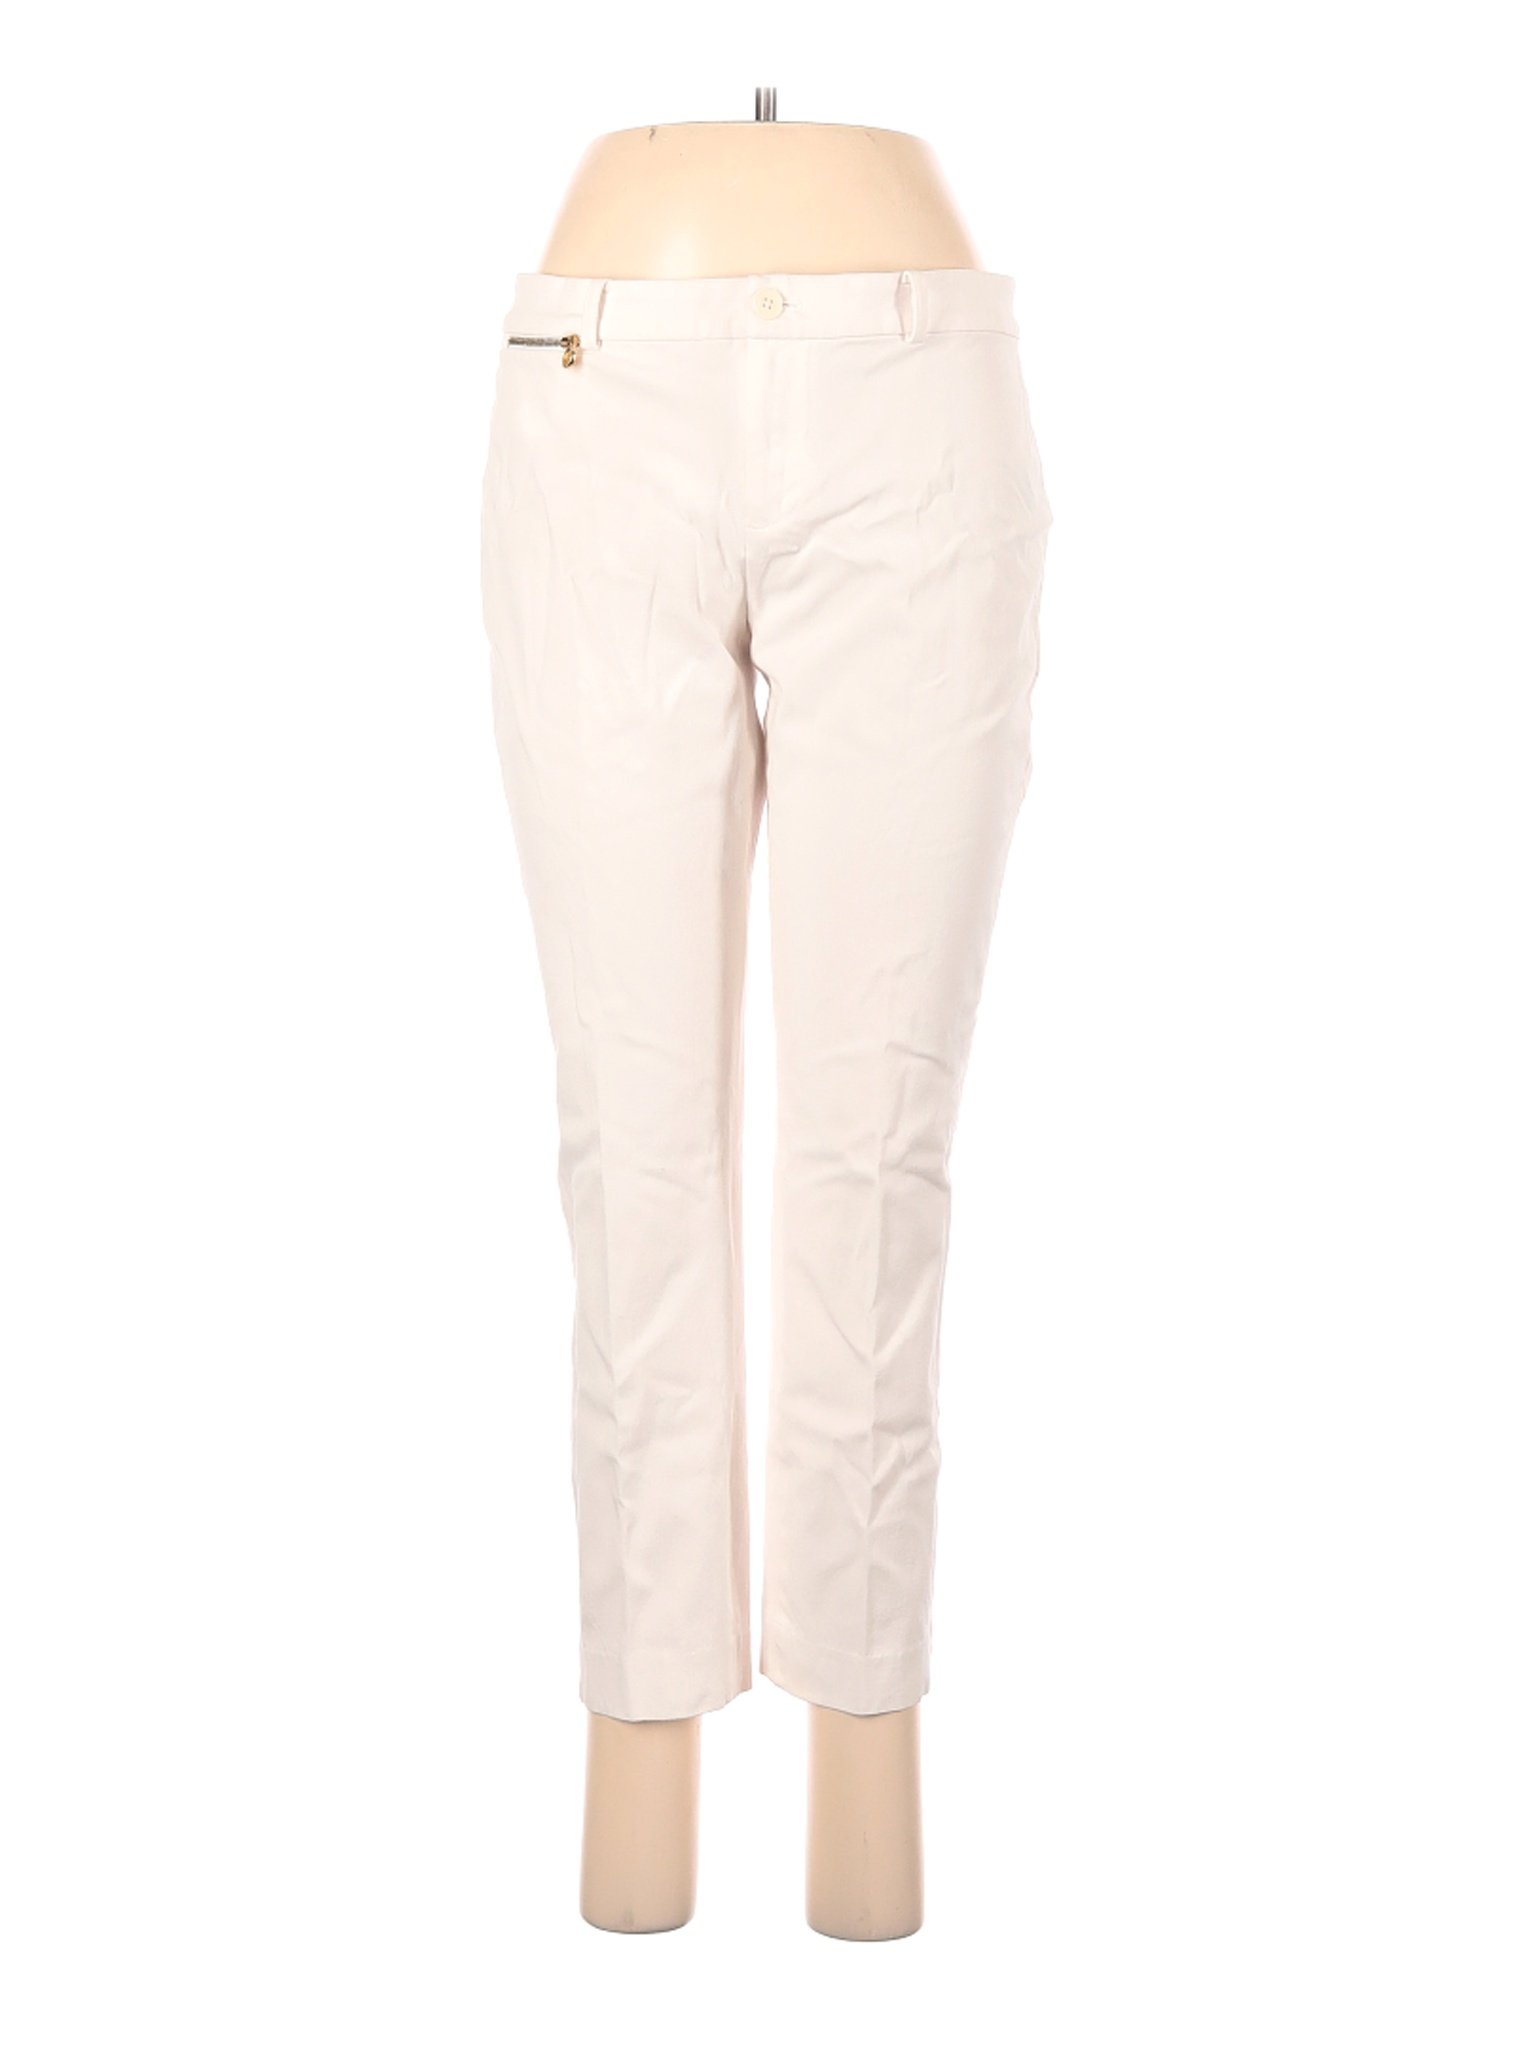 Lauren by Ralph Lauren Women Ivory Dress Pants 8 | eBay